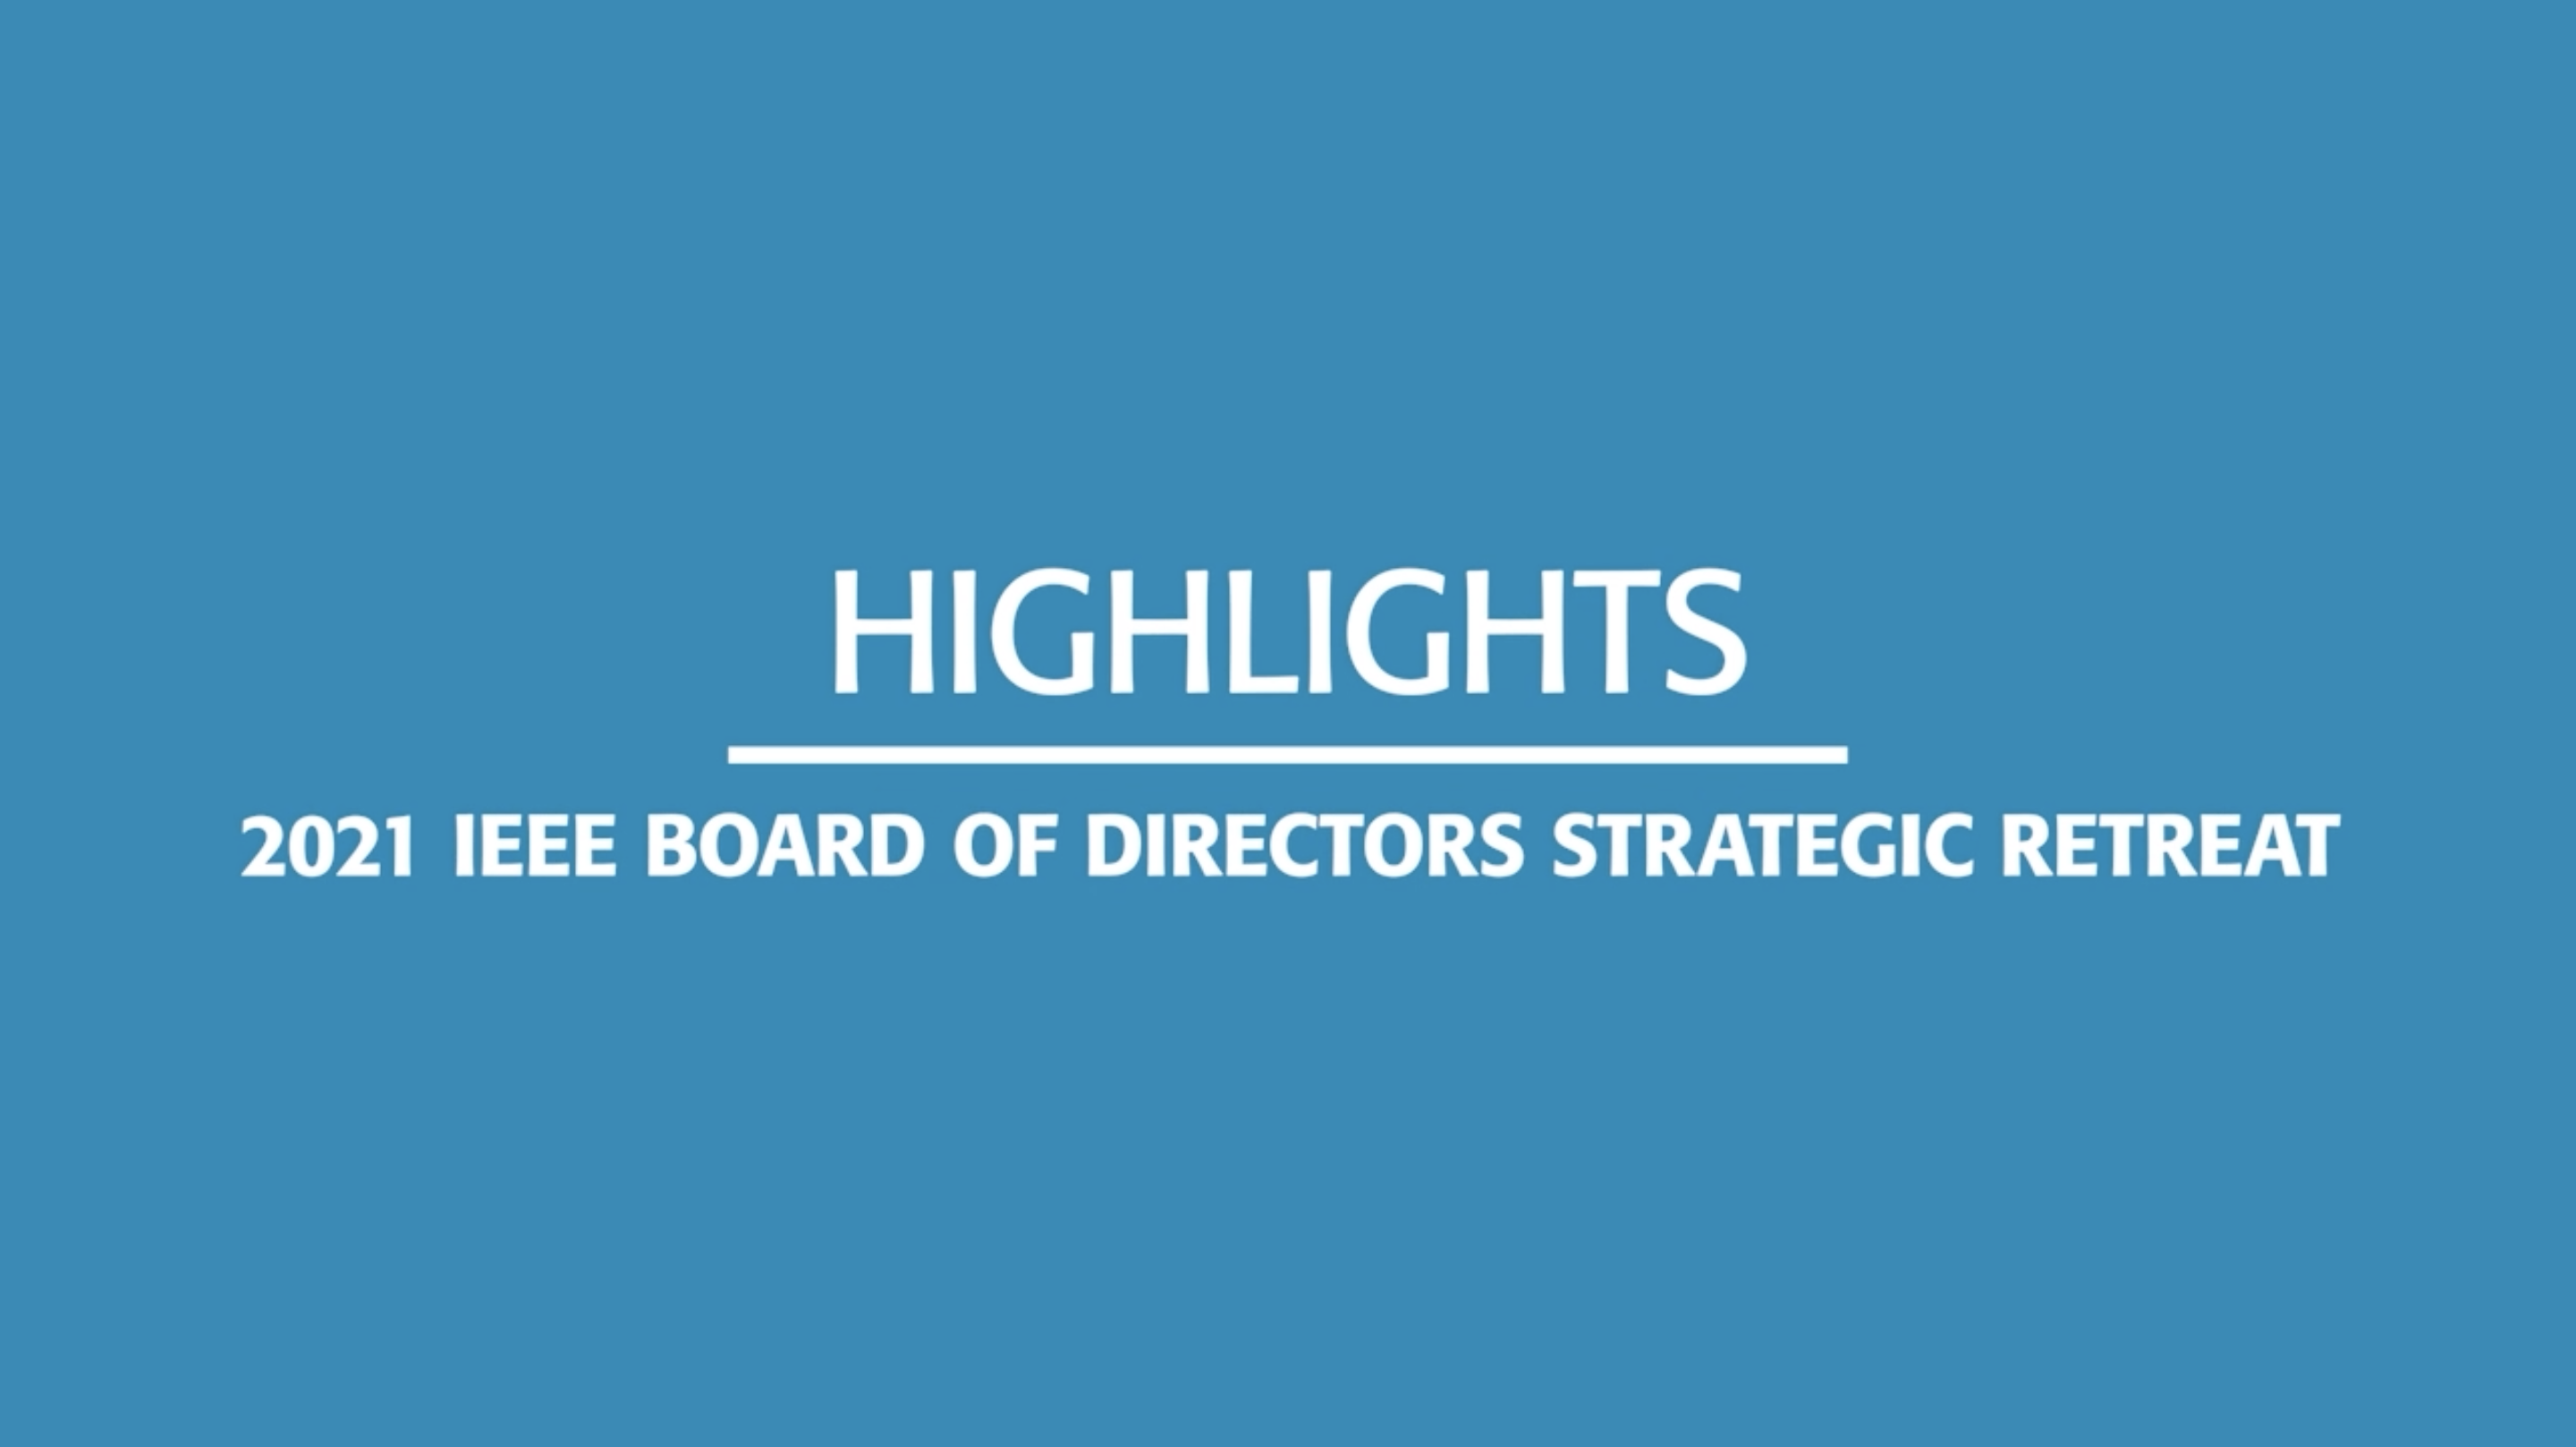 IEEE Directors' Highlights